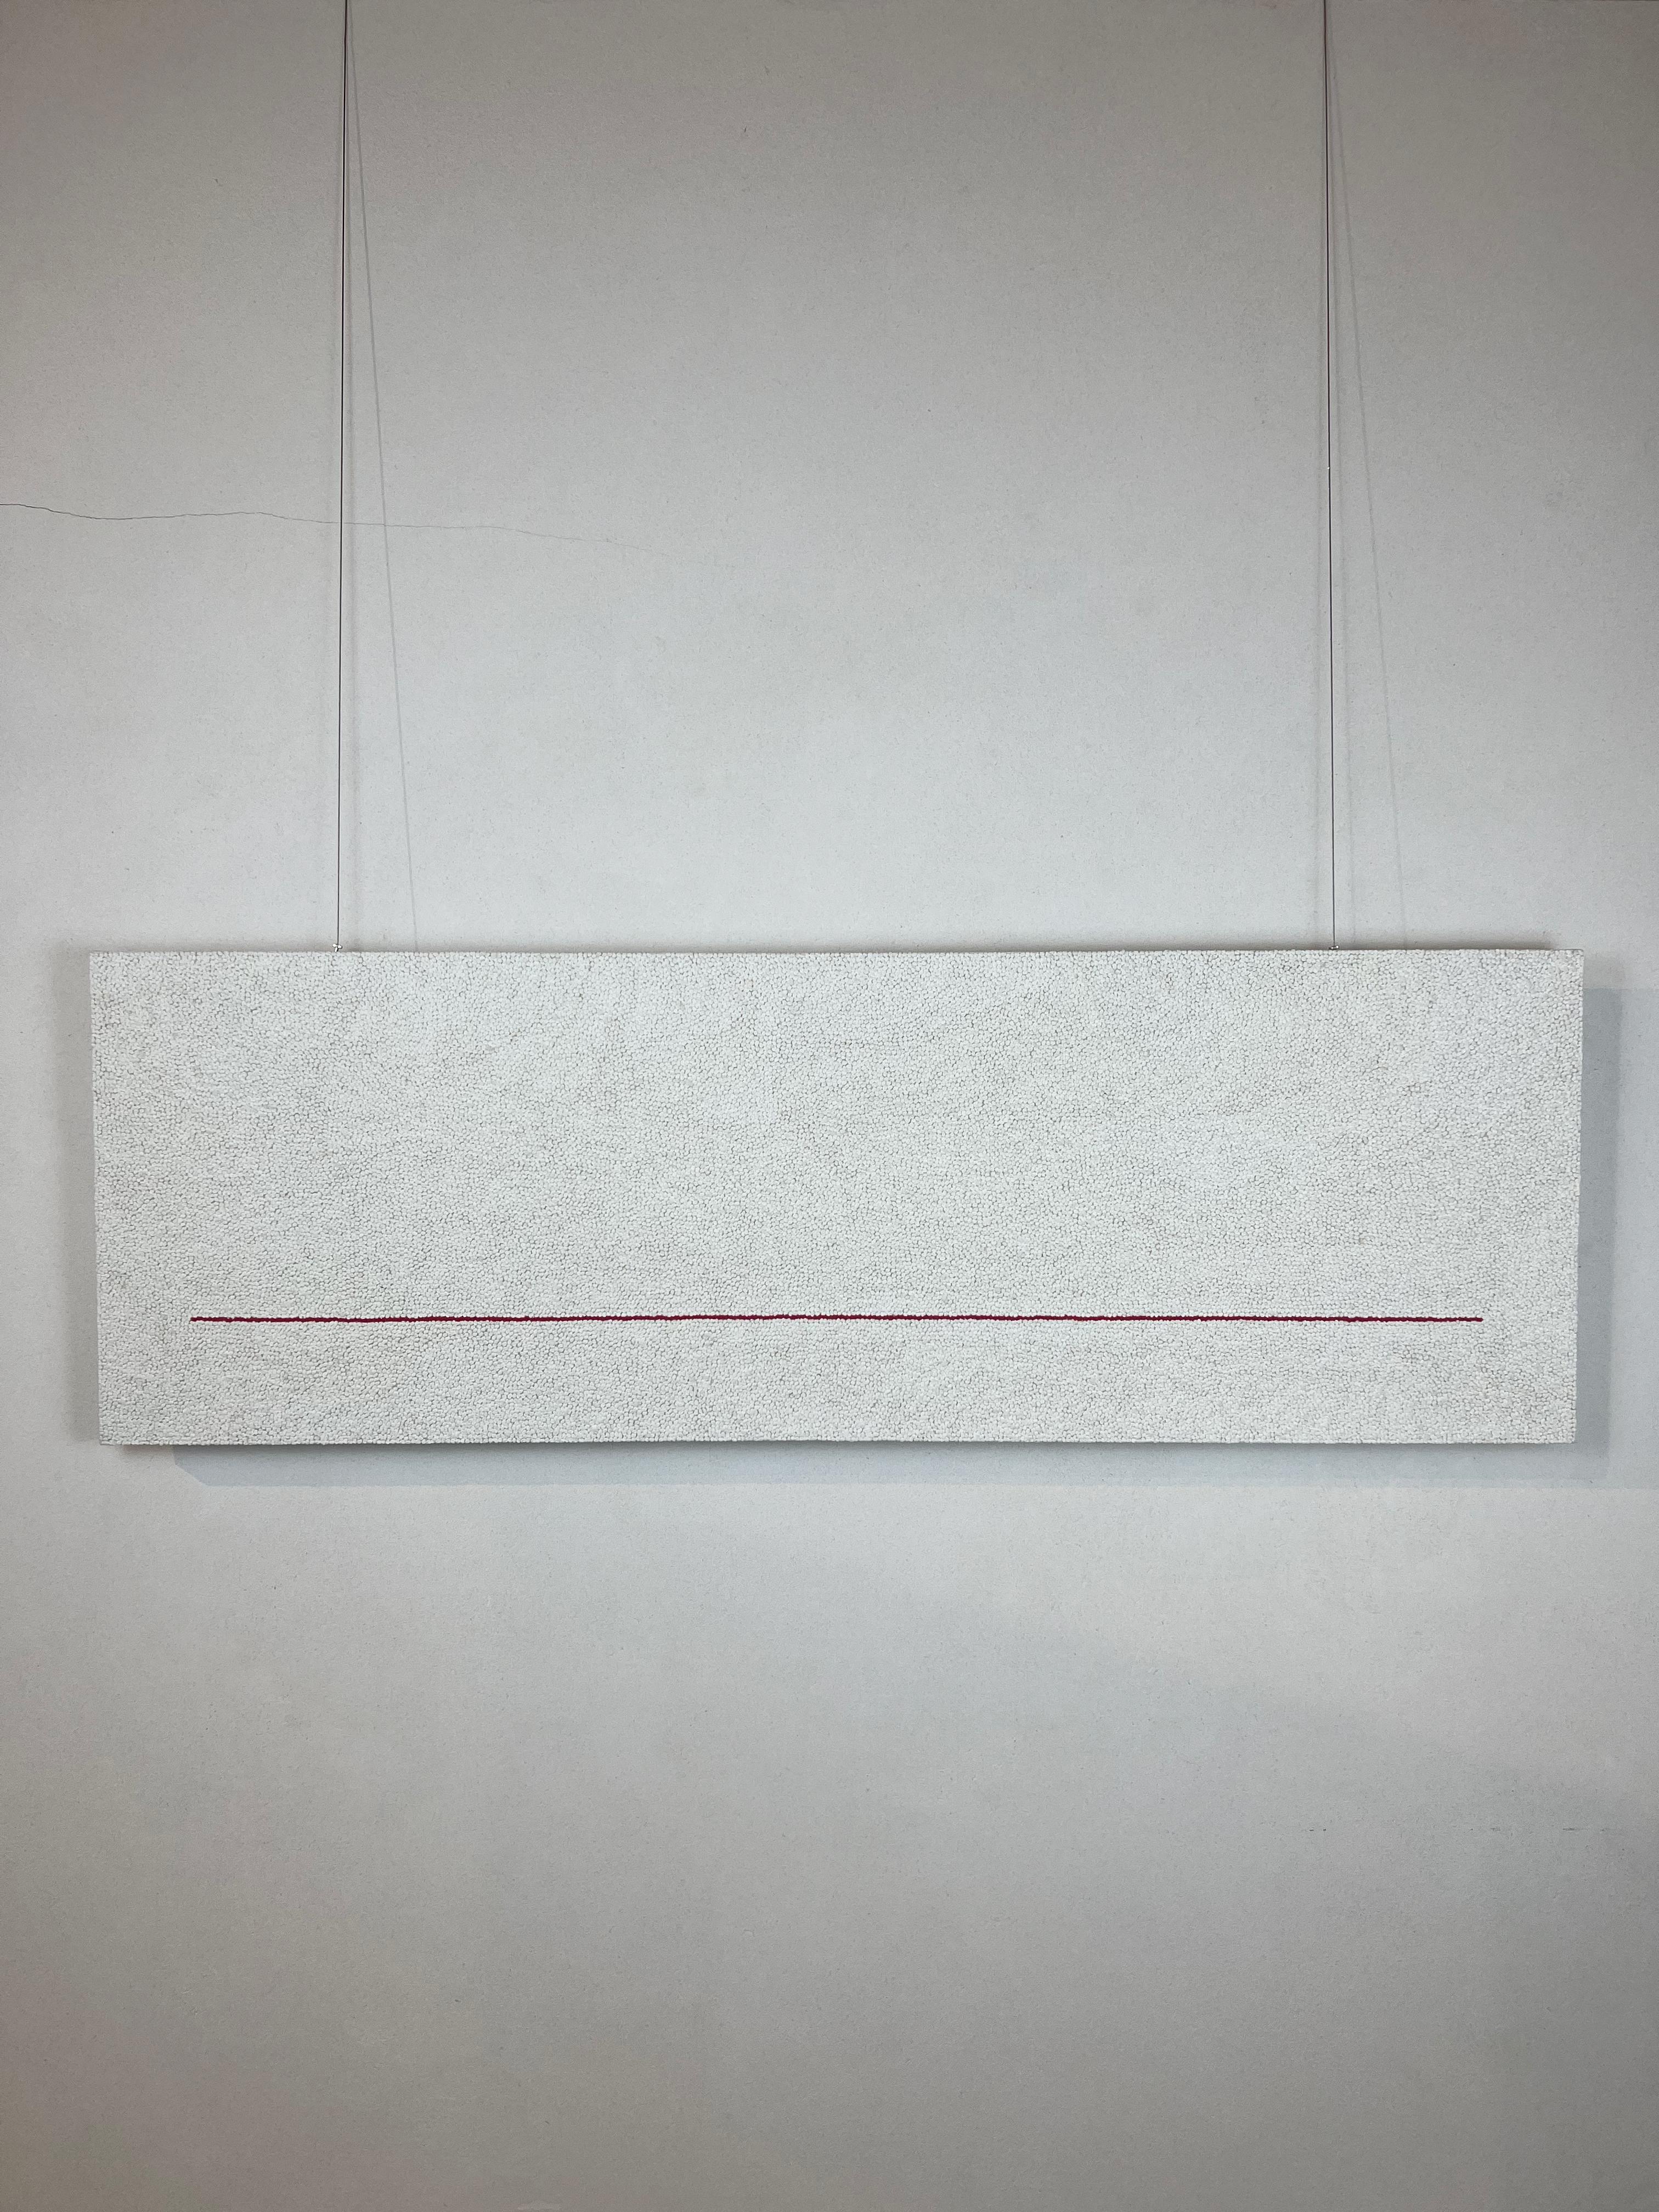 Zich voorstellen personeelszaken Schijn Peter Kramer - "The thin red line", Minimalist Cotton knots on white canvas,  150 x 50 cm For Sale at 1stDibs